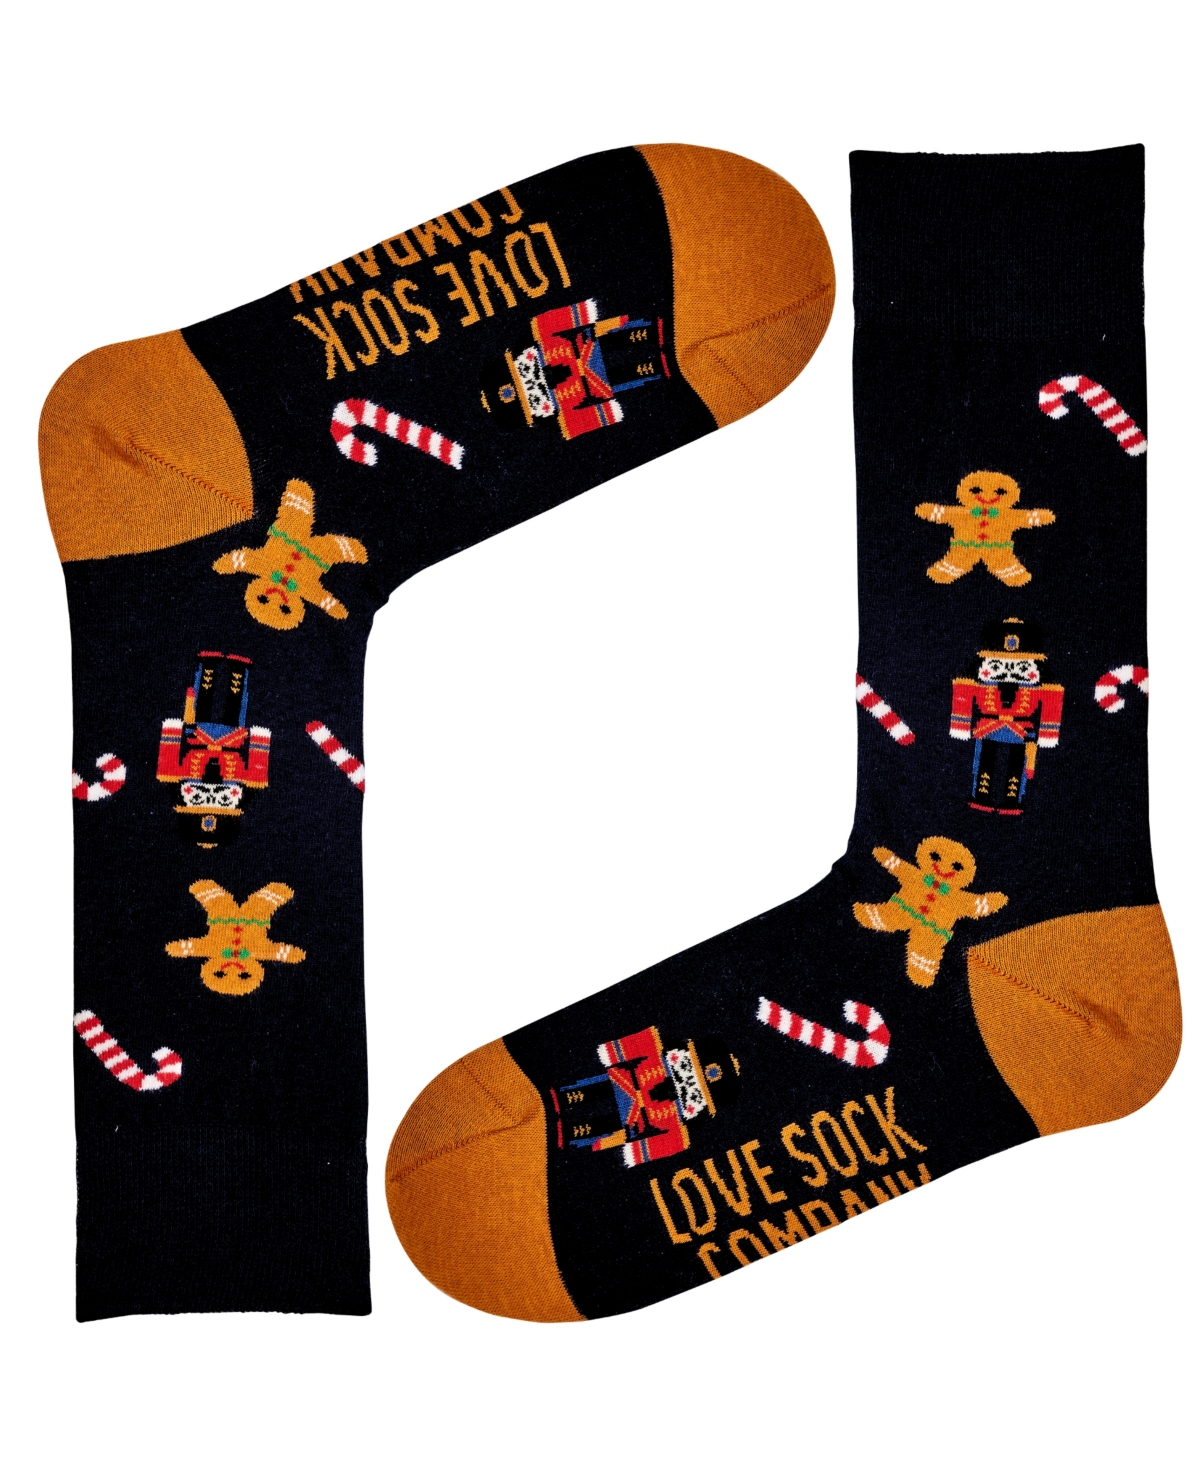 Men's Christmas Nutcracker Novelty Unisex Crew Socks, Pack of 1 - Black